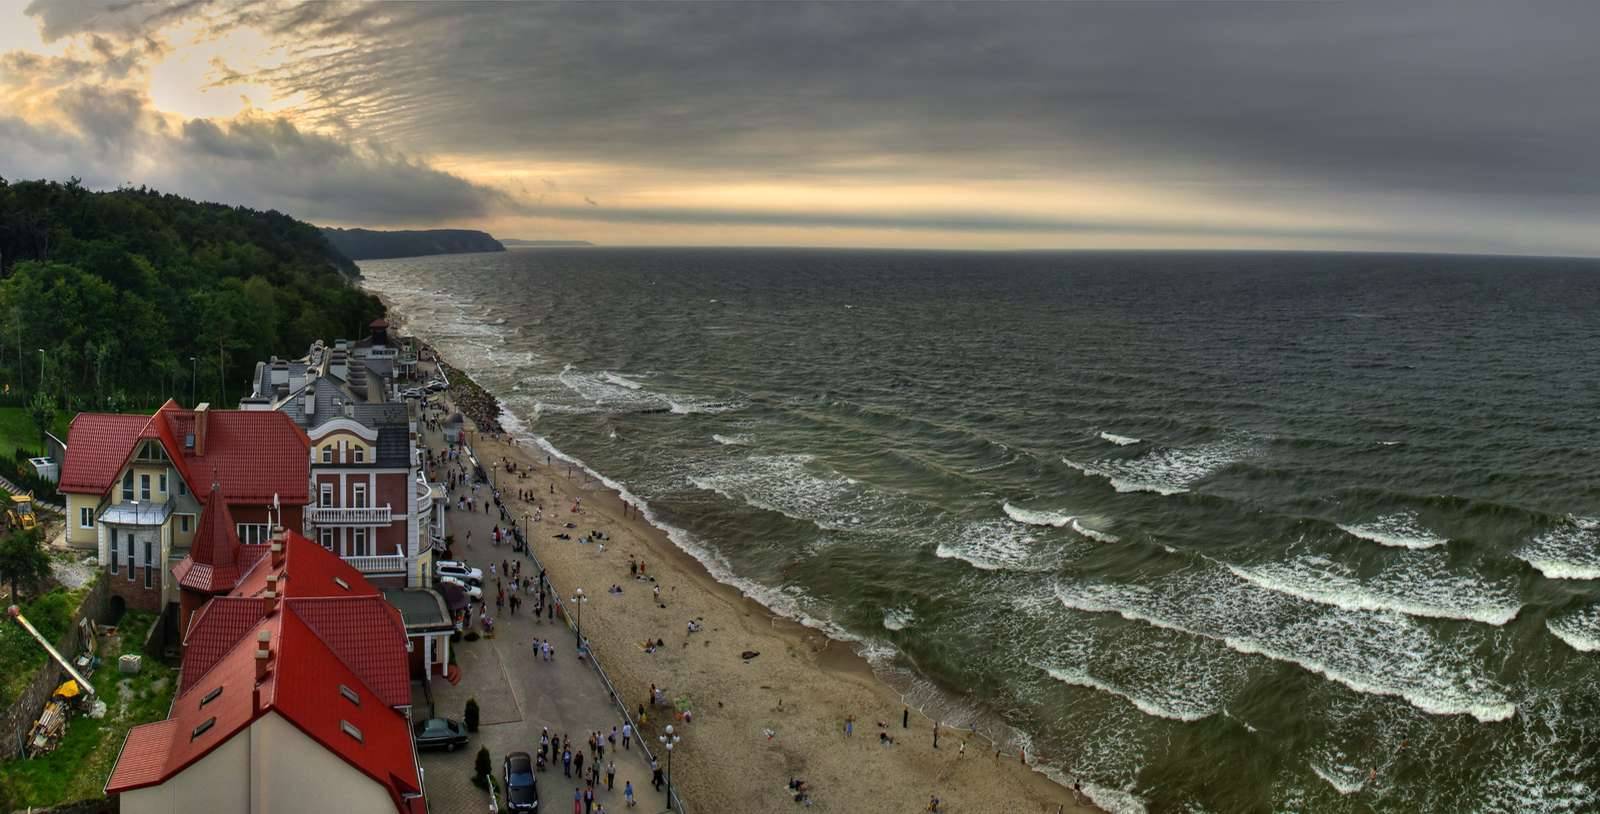 Море в калининграде: когда лучше ехать отдыхать, какой пляж выбрать, отдых летом